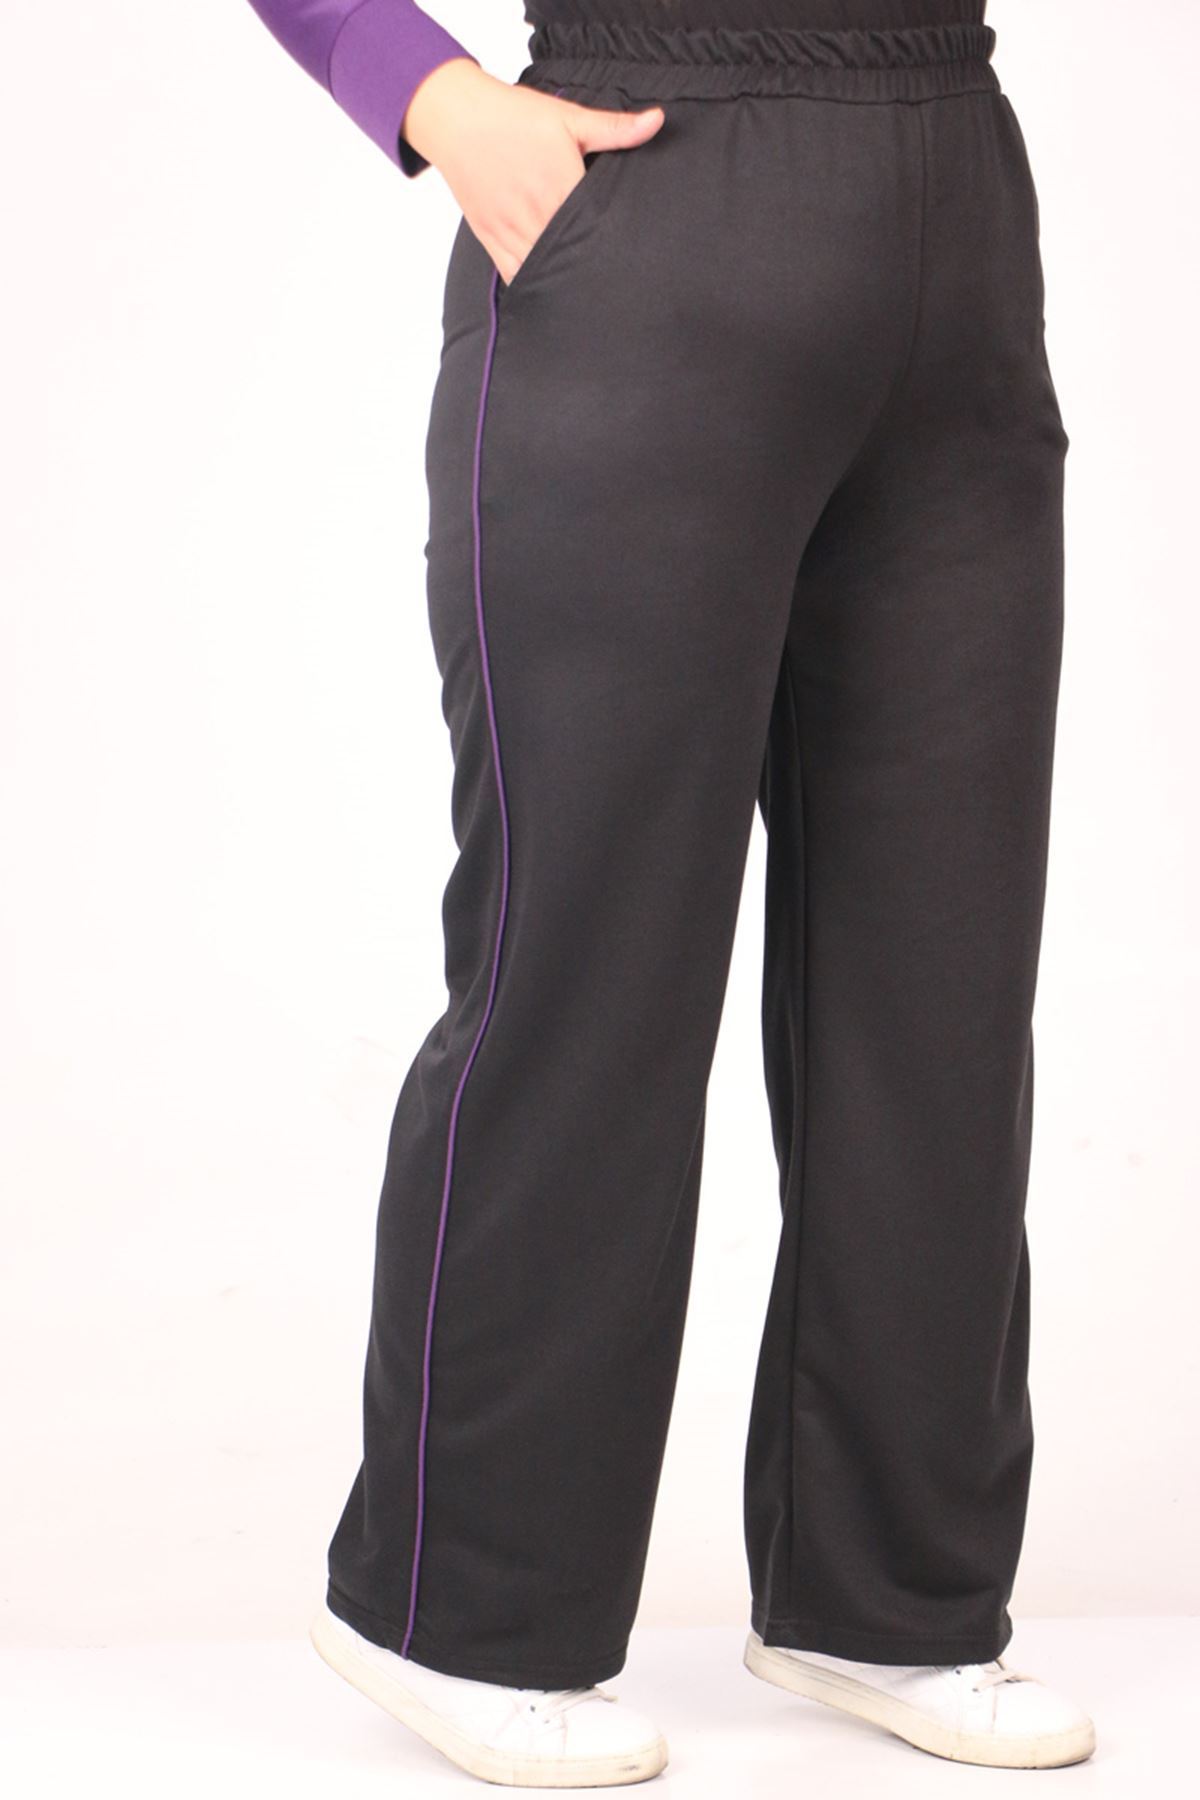 SHRNR19820 Büyük Beden Renk Kombinli İki İplik Pantolonlu Takım-Siyah-Mor 